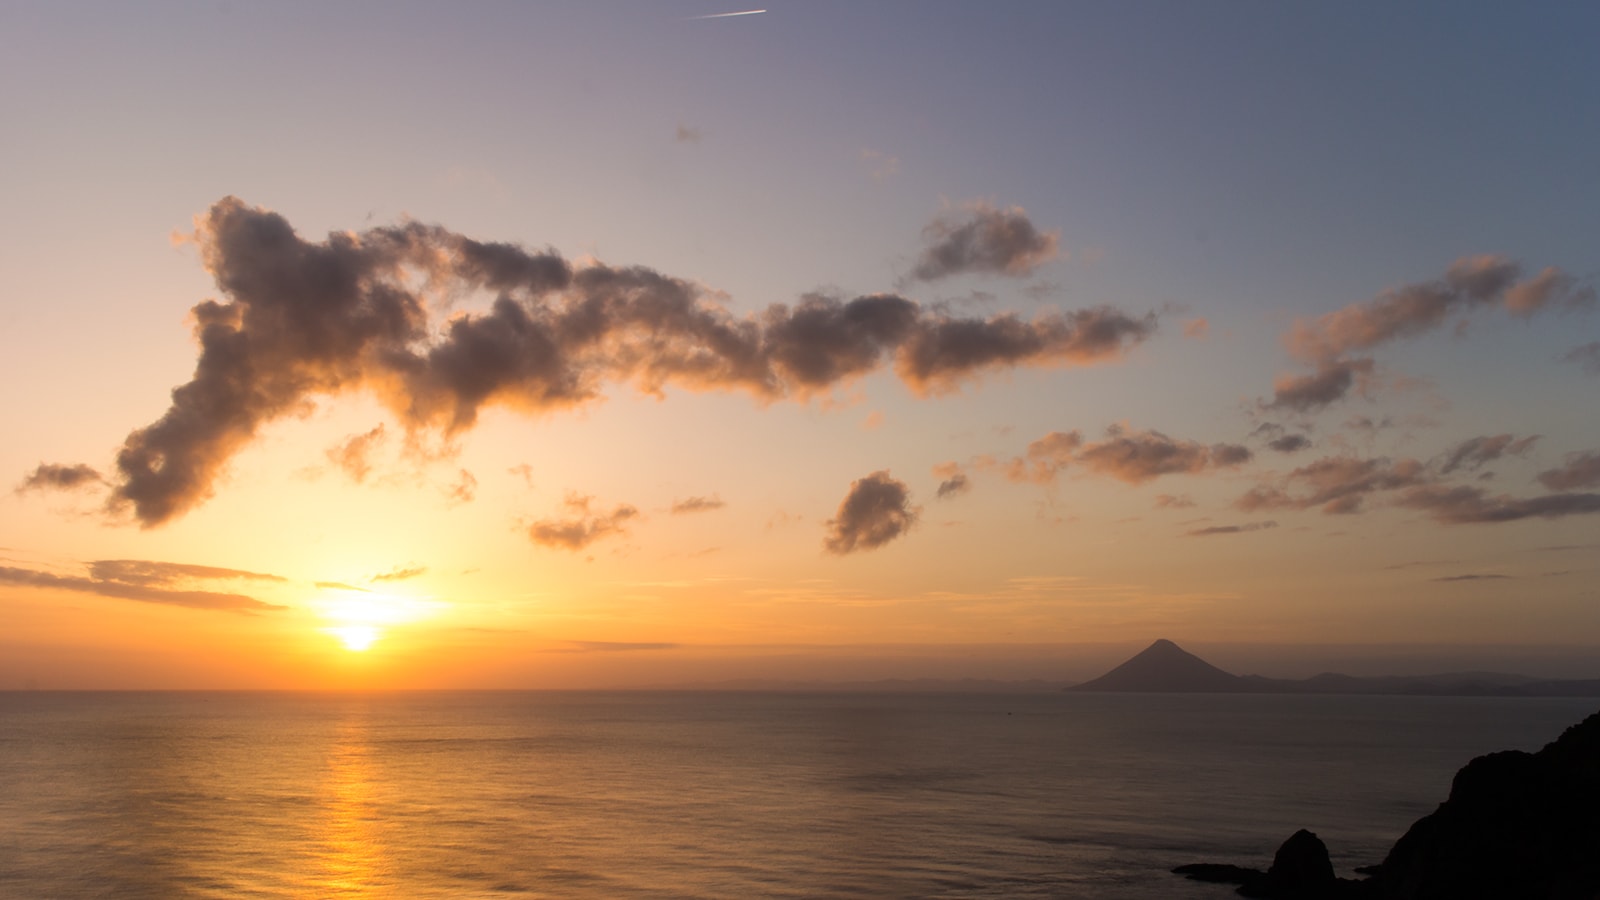 美しい開聞岳とともに夕陽の沈む雄大な海を眺められる佐多岬展望台 - - 鹿児島県南大隅町の観光、撮影スポット- -